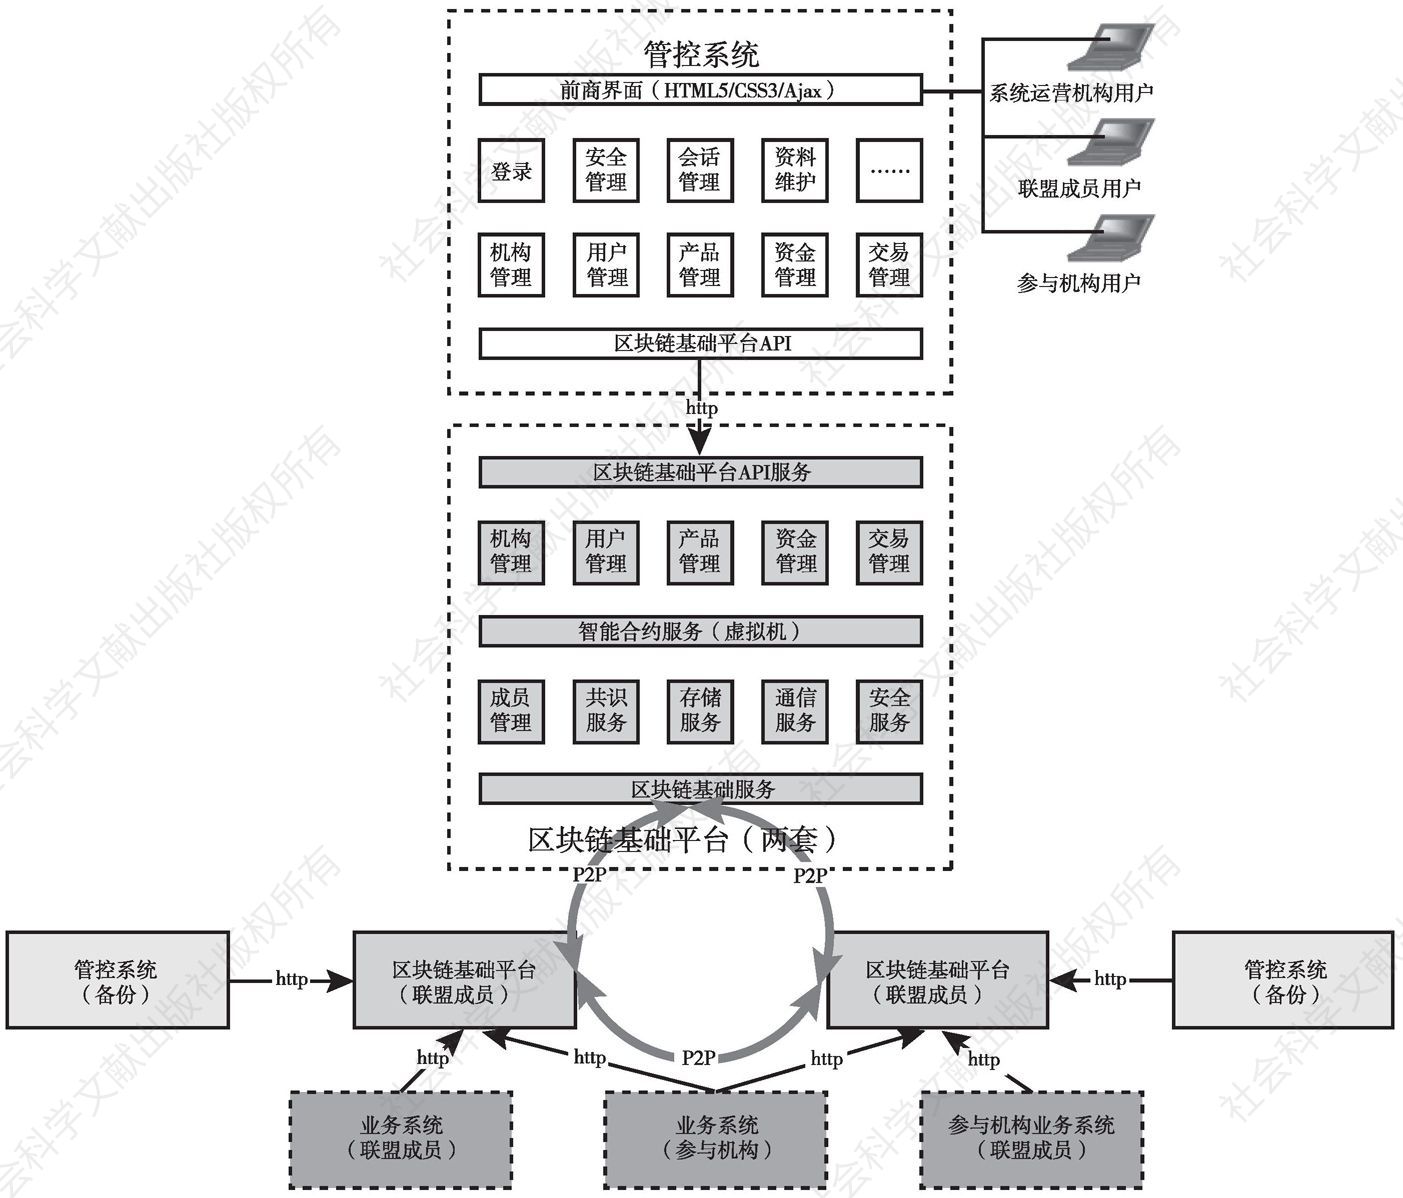 图2 系统应用架构